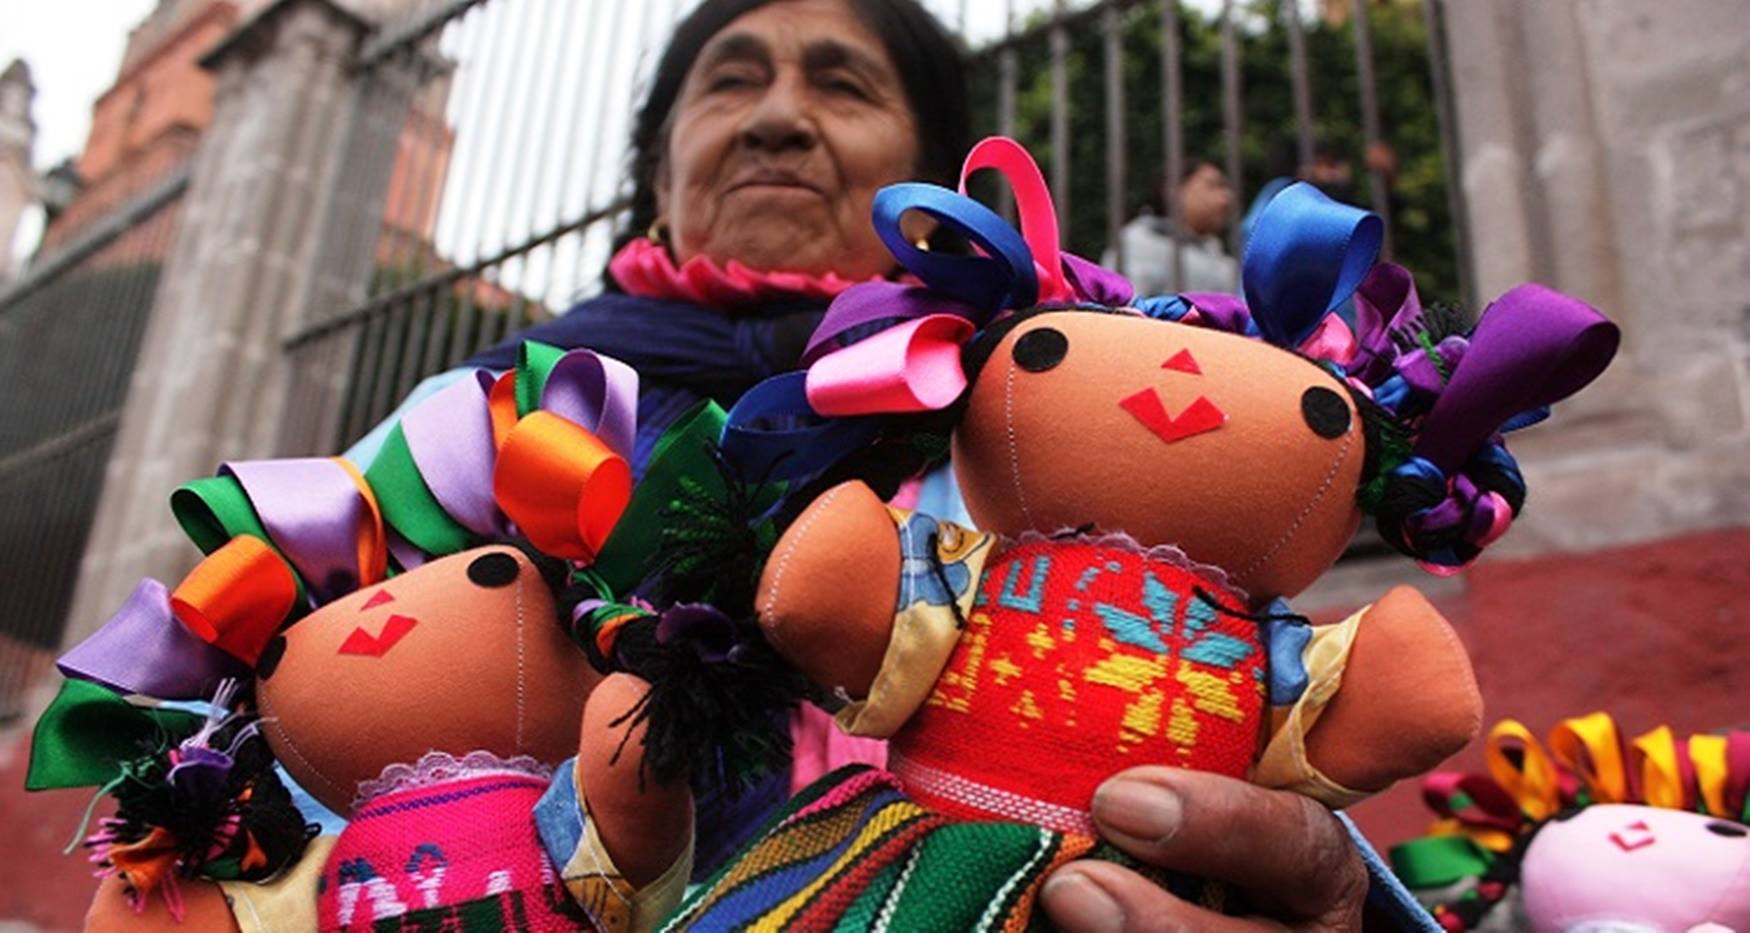 La muñeca María, su historia y simbolismo en la mexicana Más de